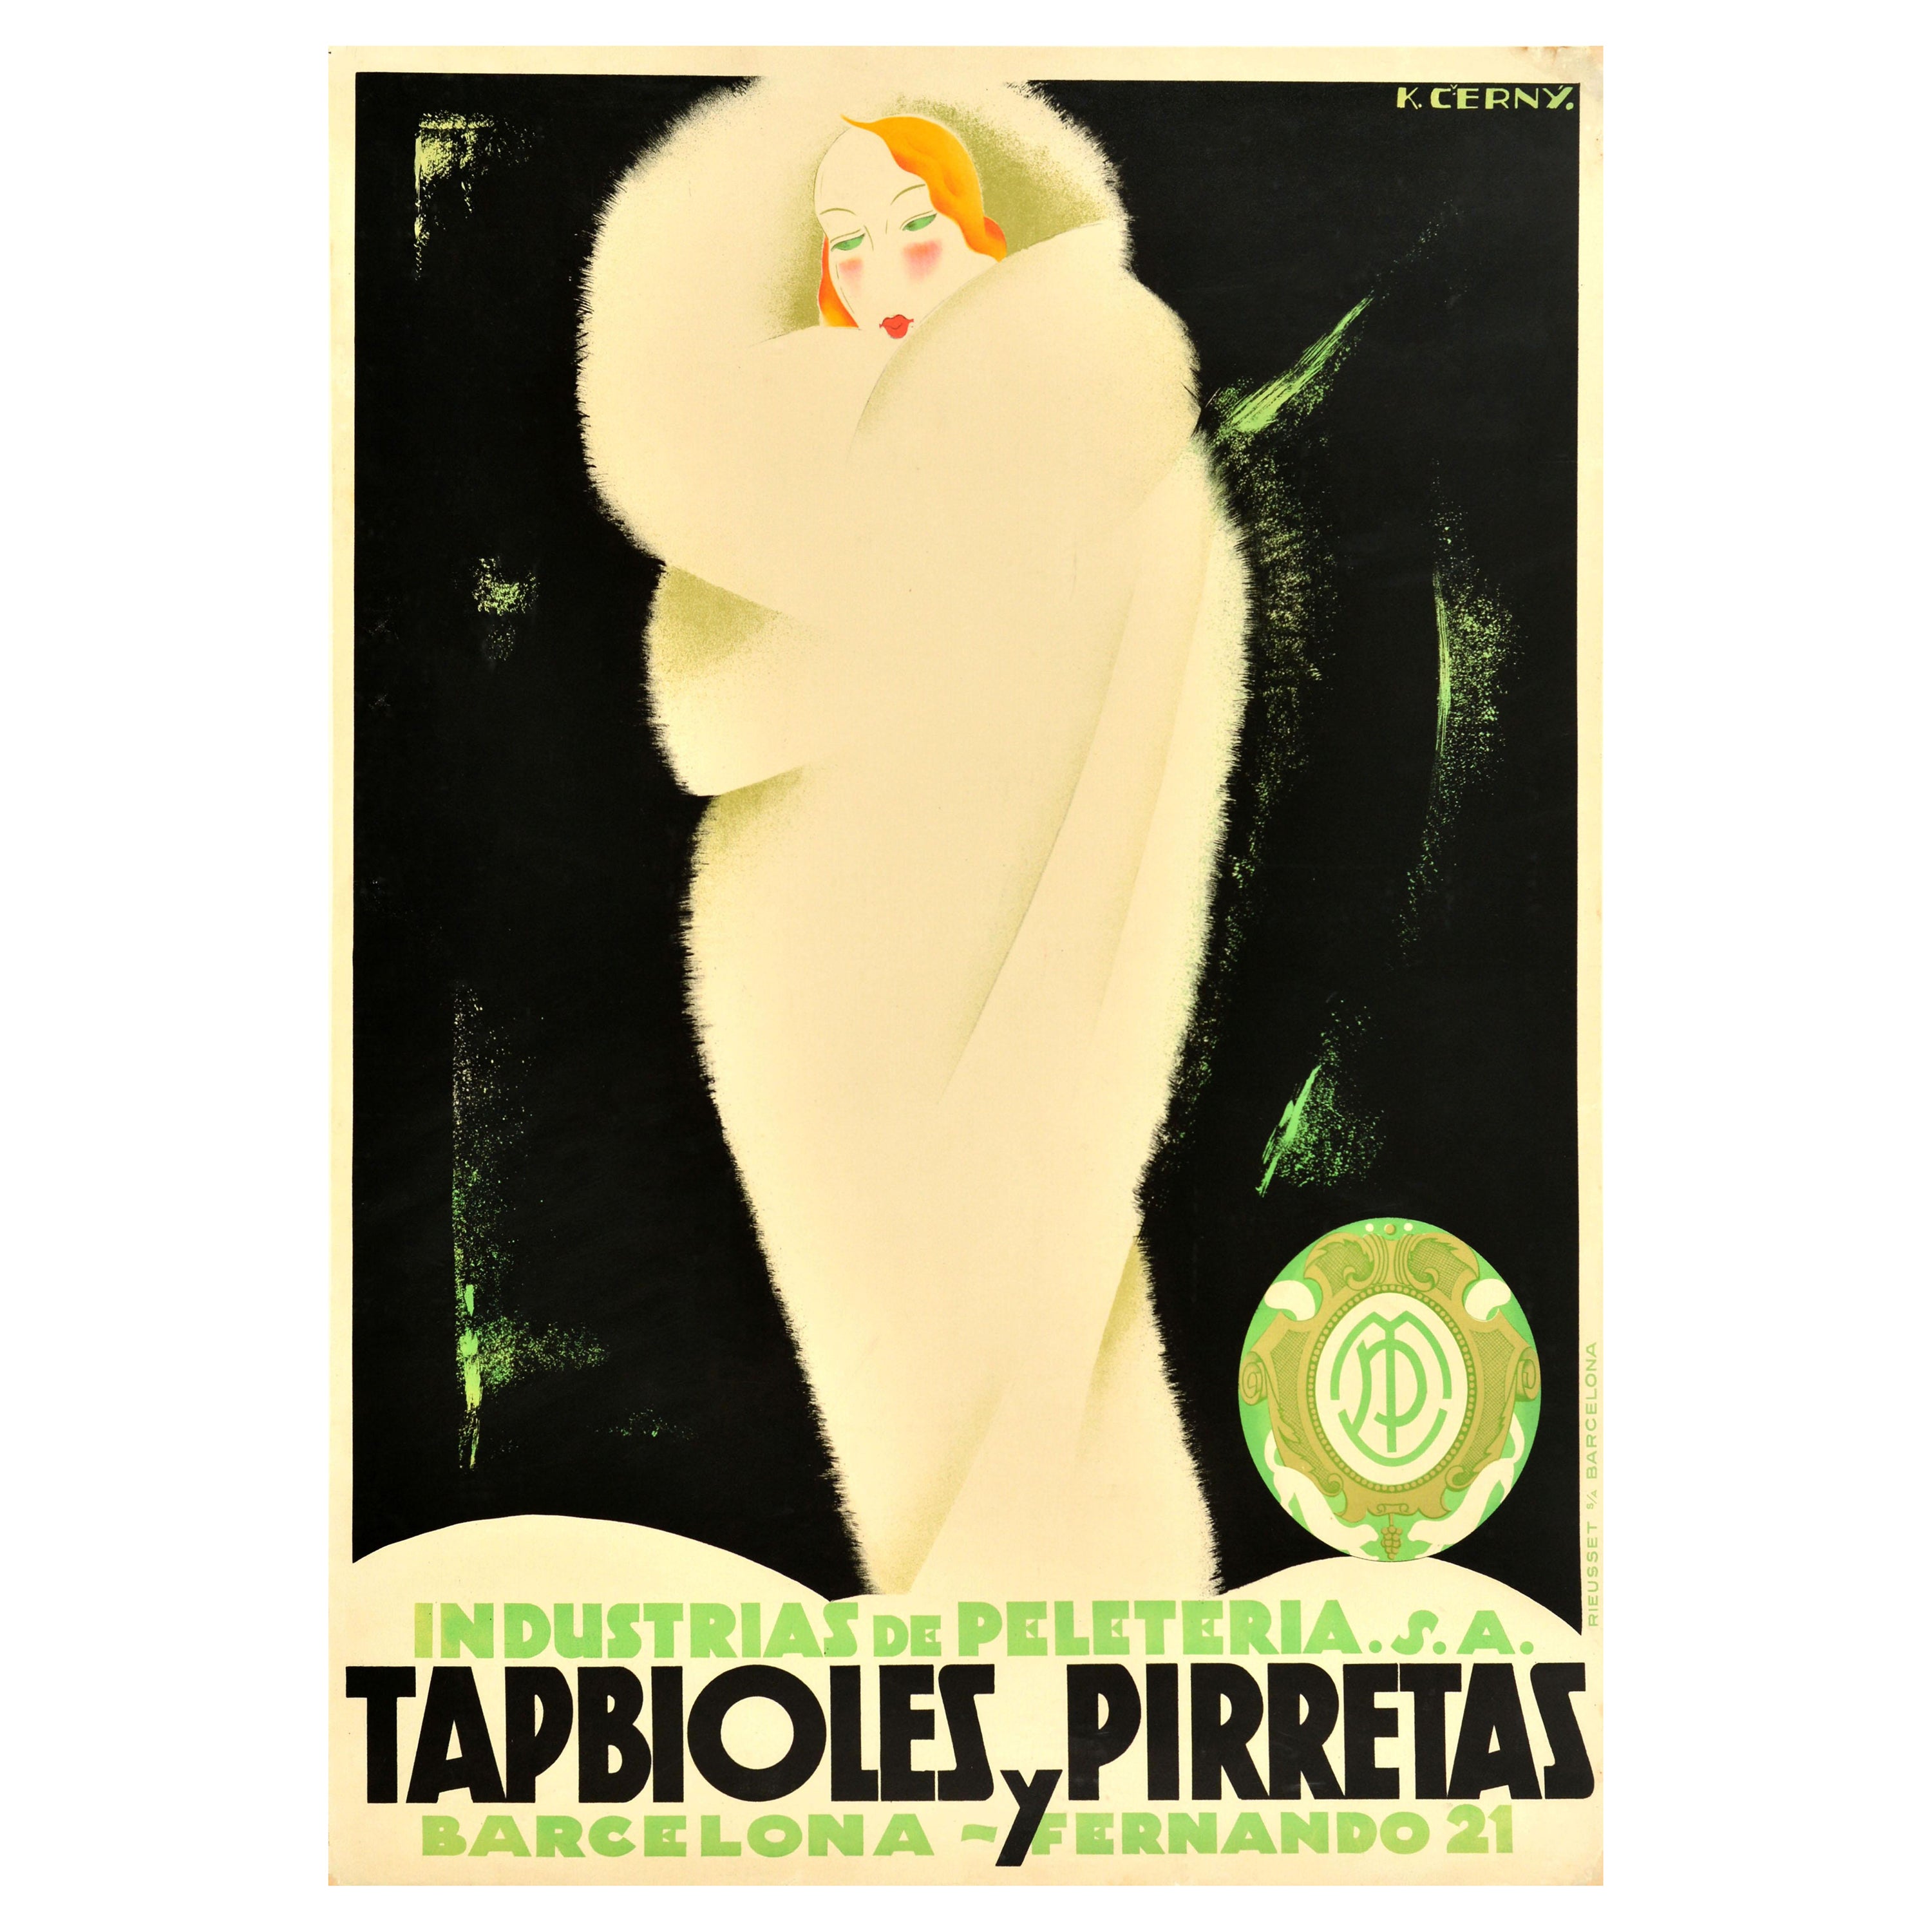 Affiche publicitaire espagnole originale vintage Tapbioles Y Pirretas en fourrure